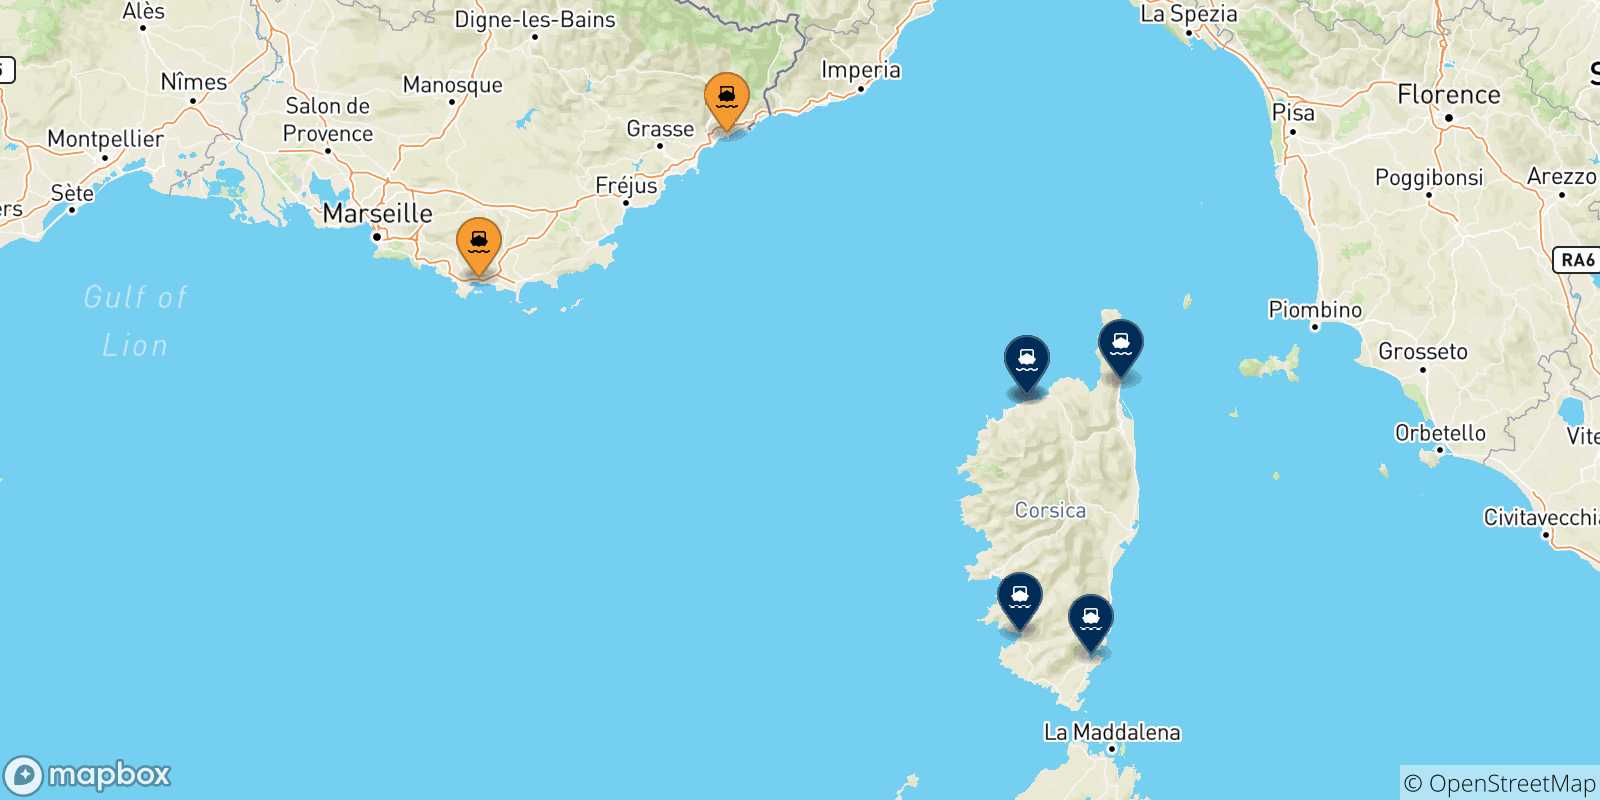 Mappa delle possibili rotte tra la Francia e la Corsica